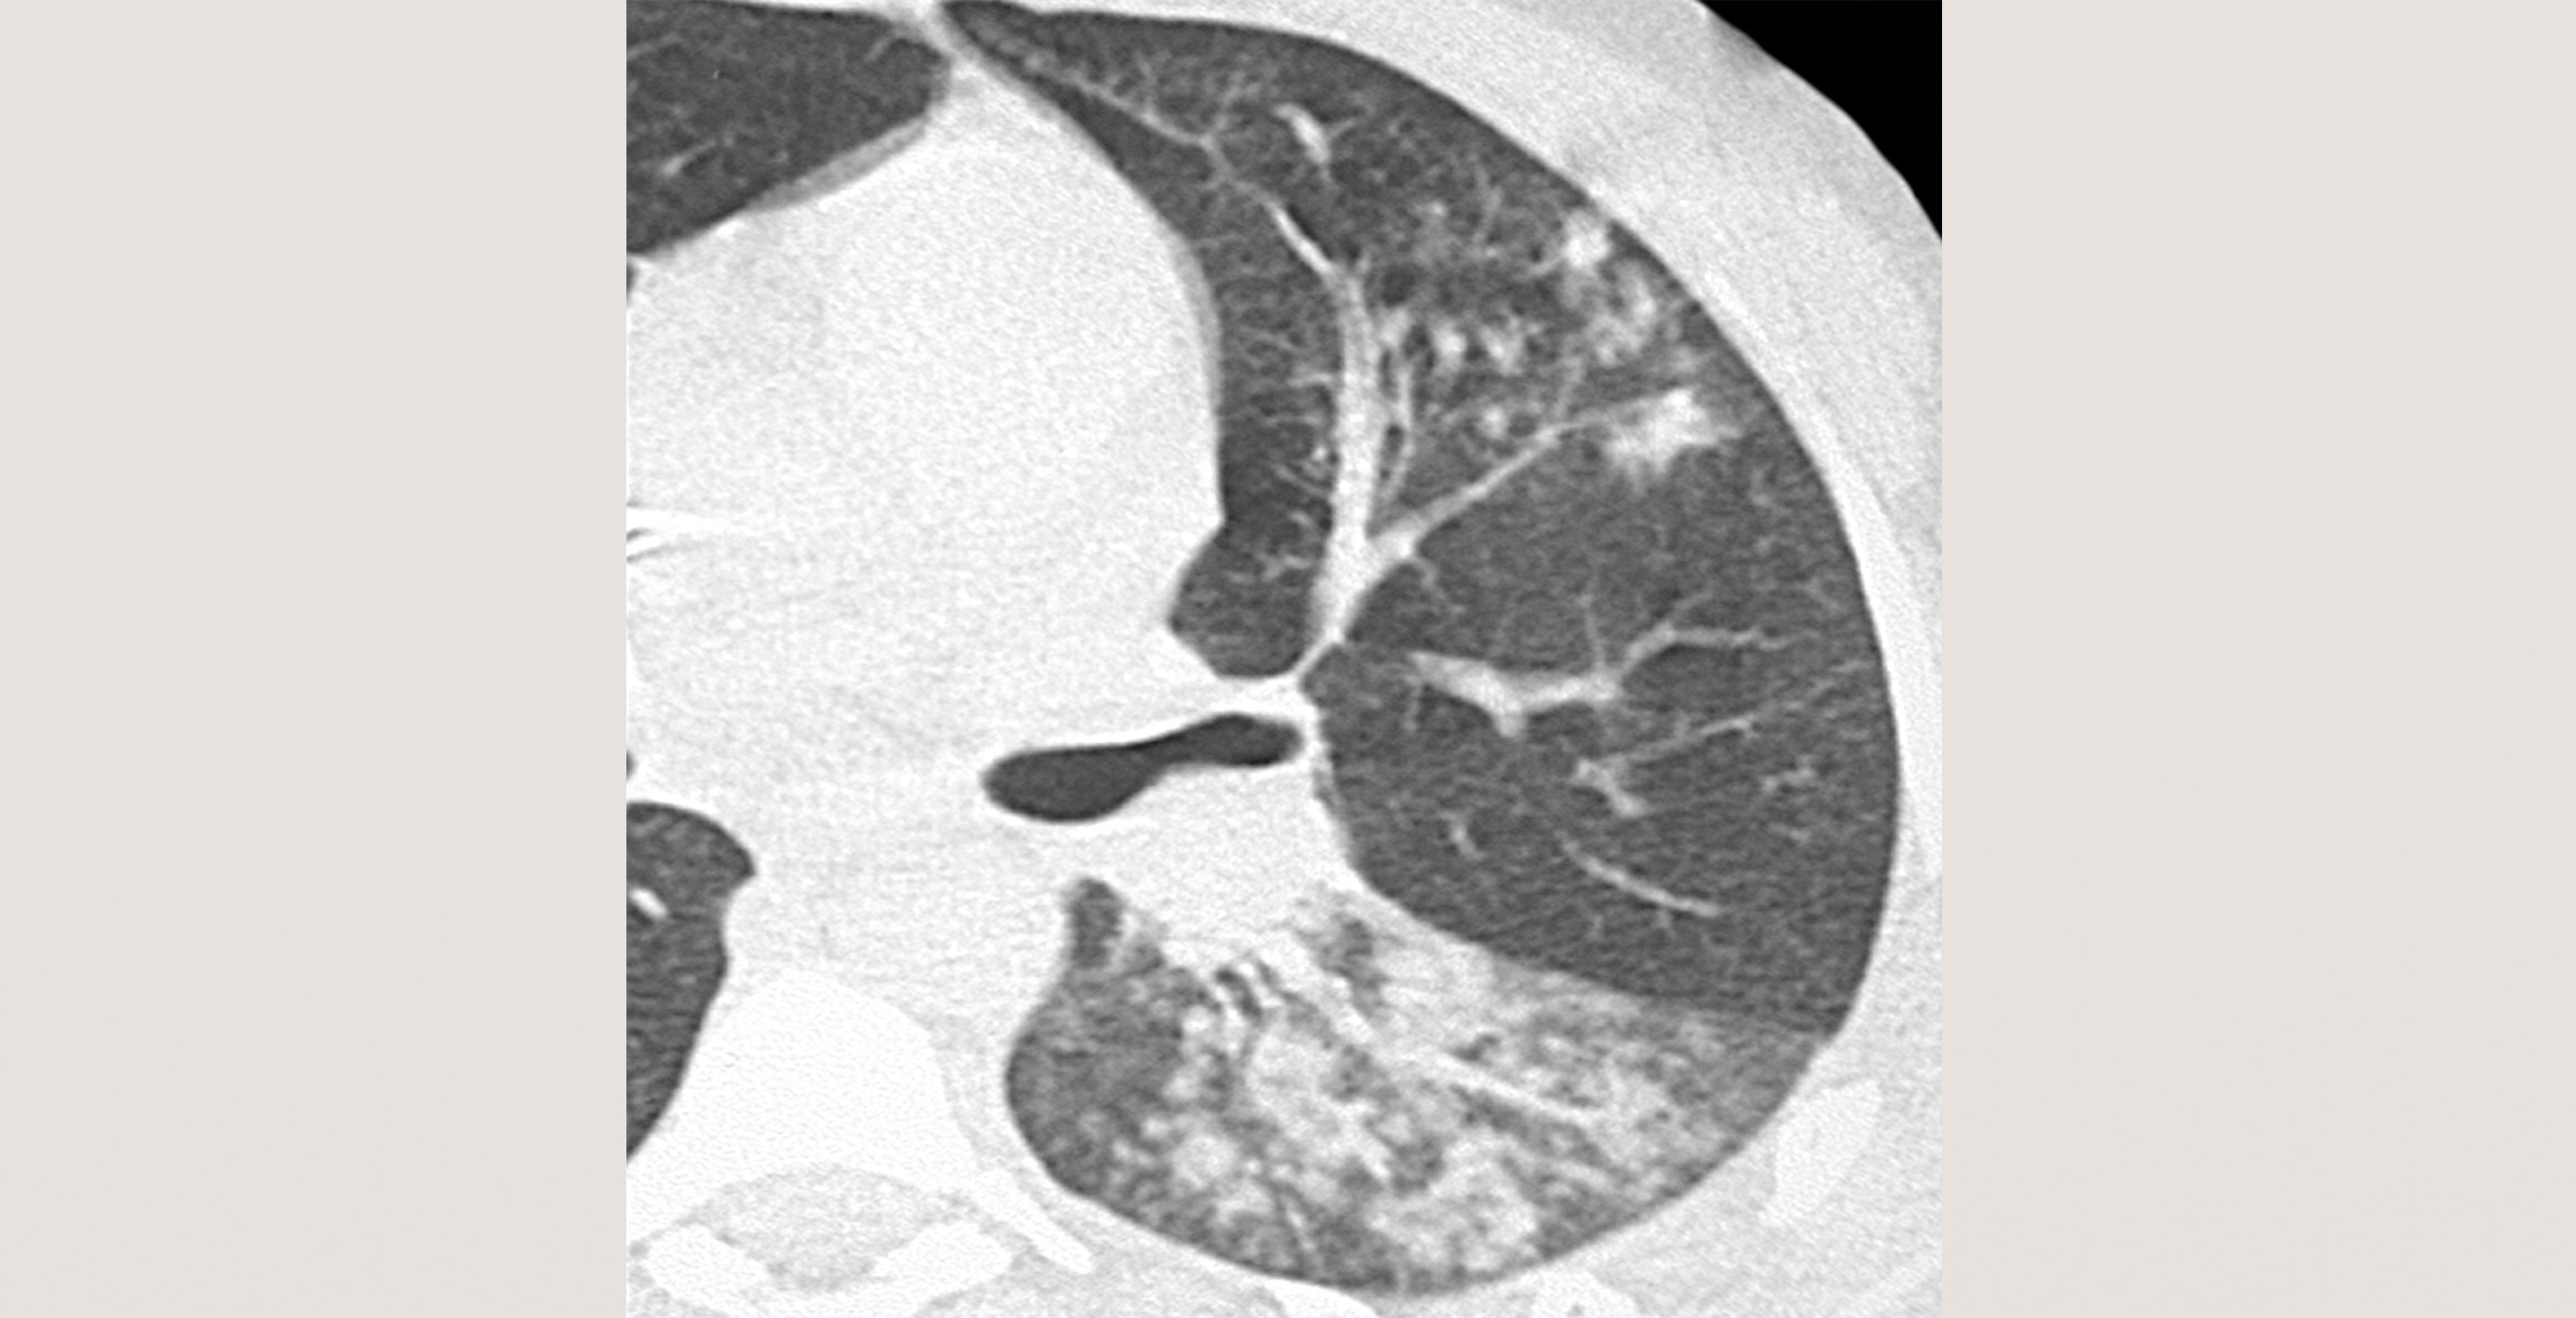 d6-radiology-viral-pneumonia